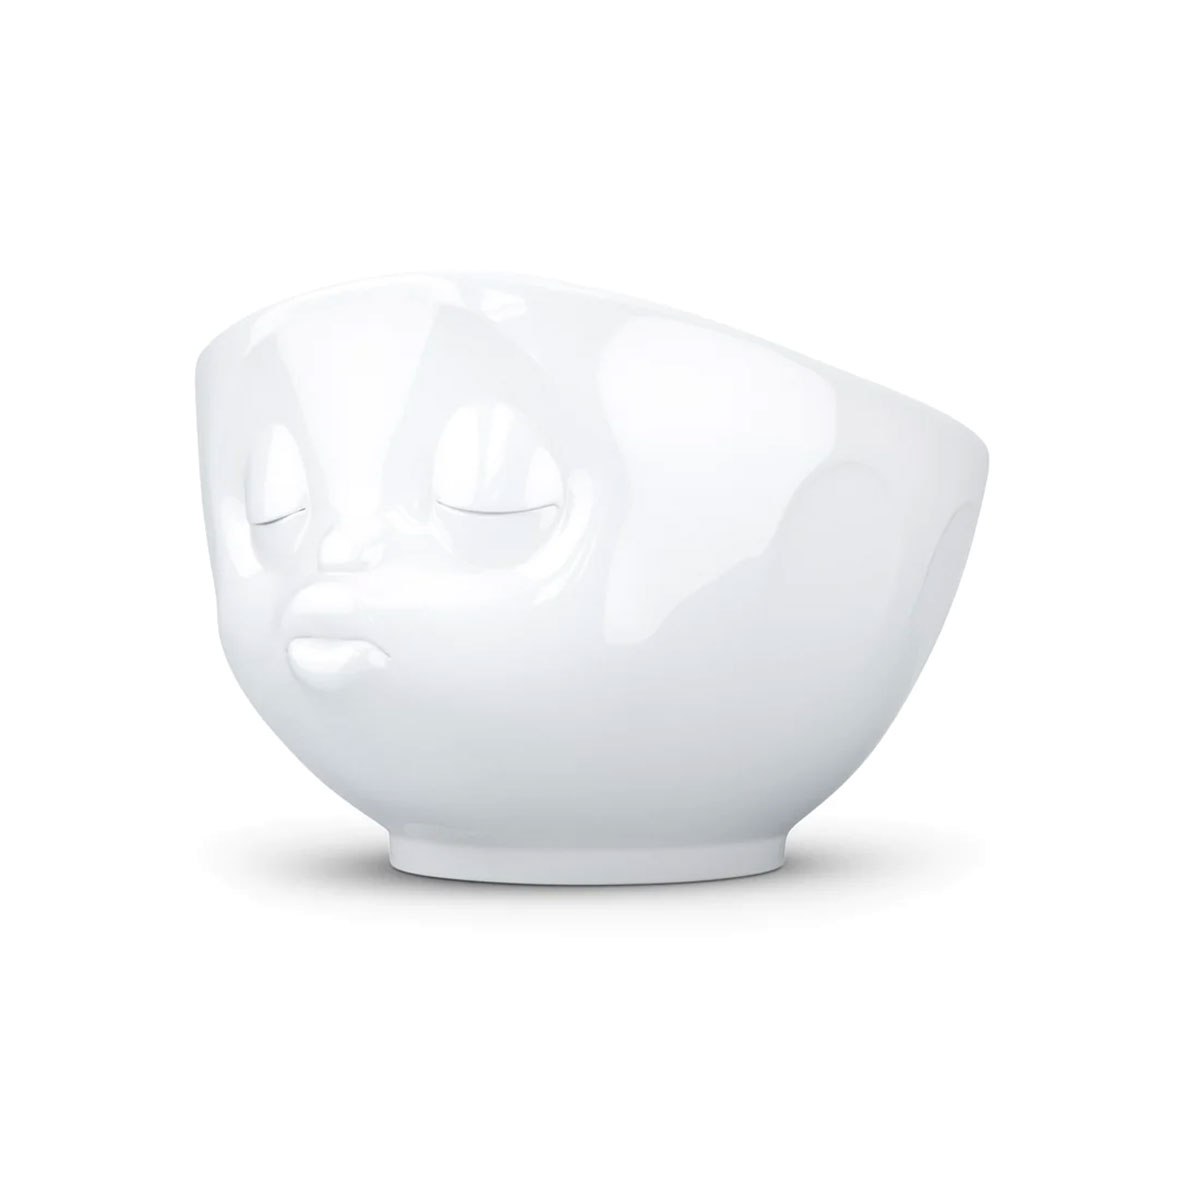 Large white porcelain bowl Tassen 500 ml - Kiss